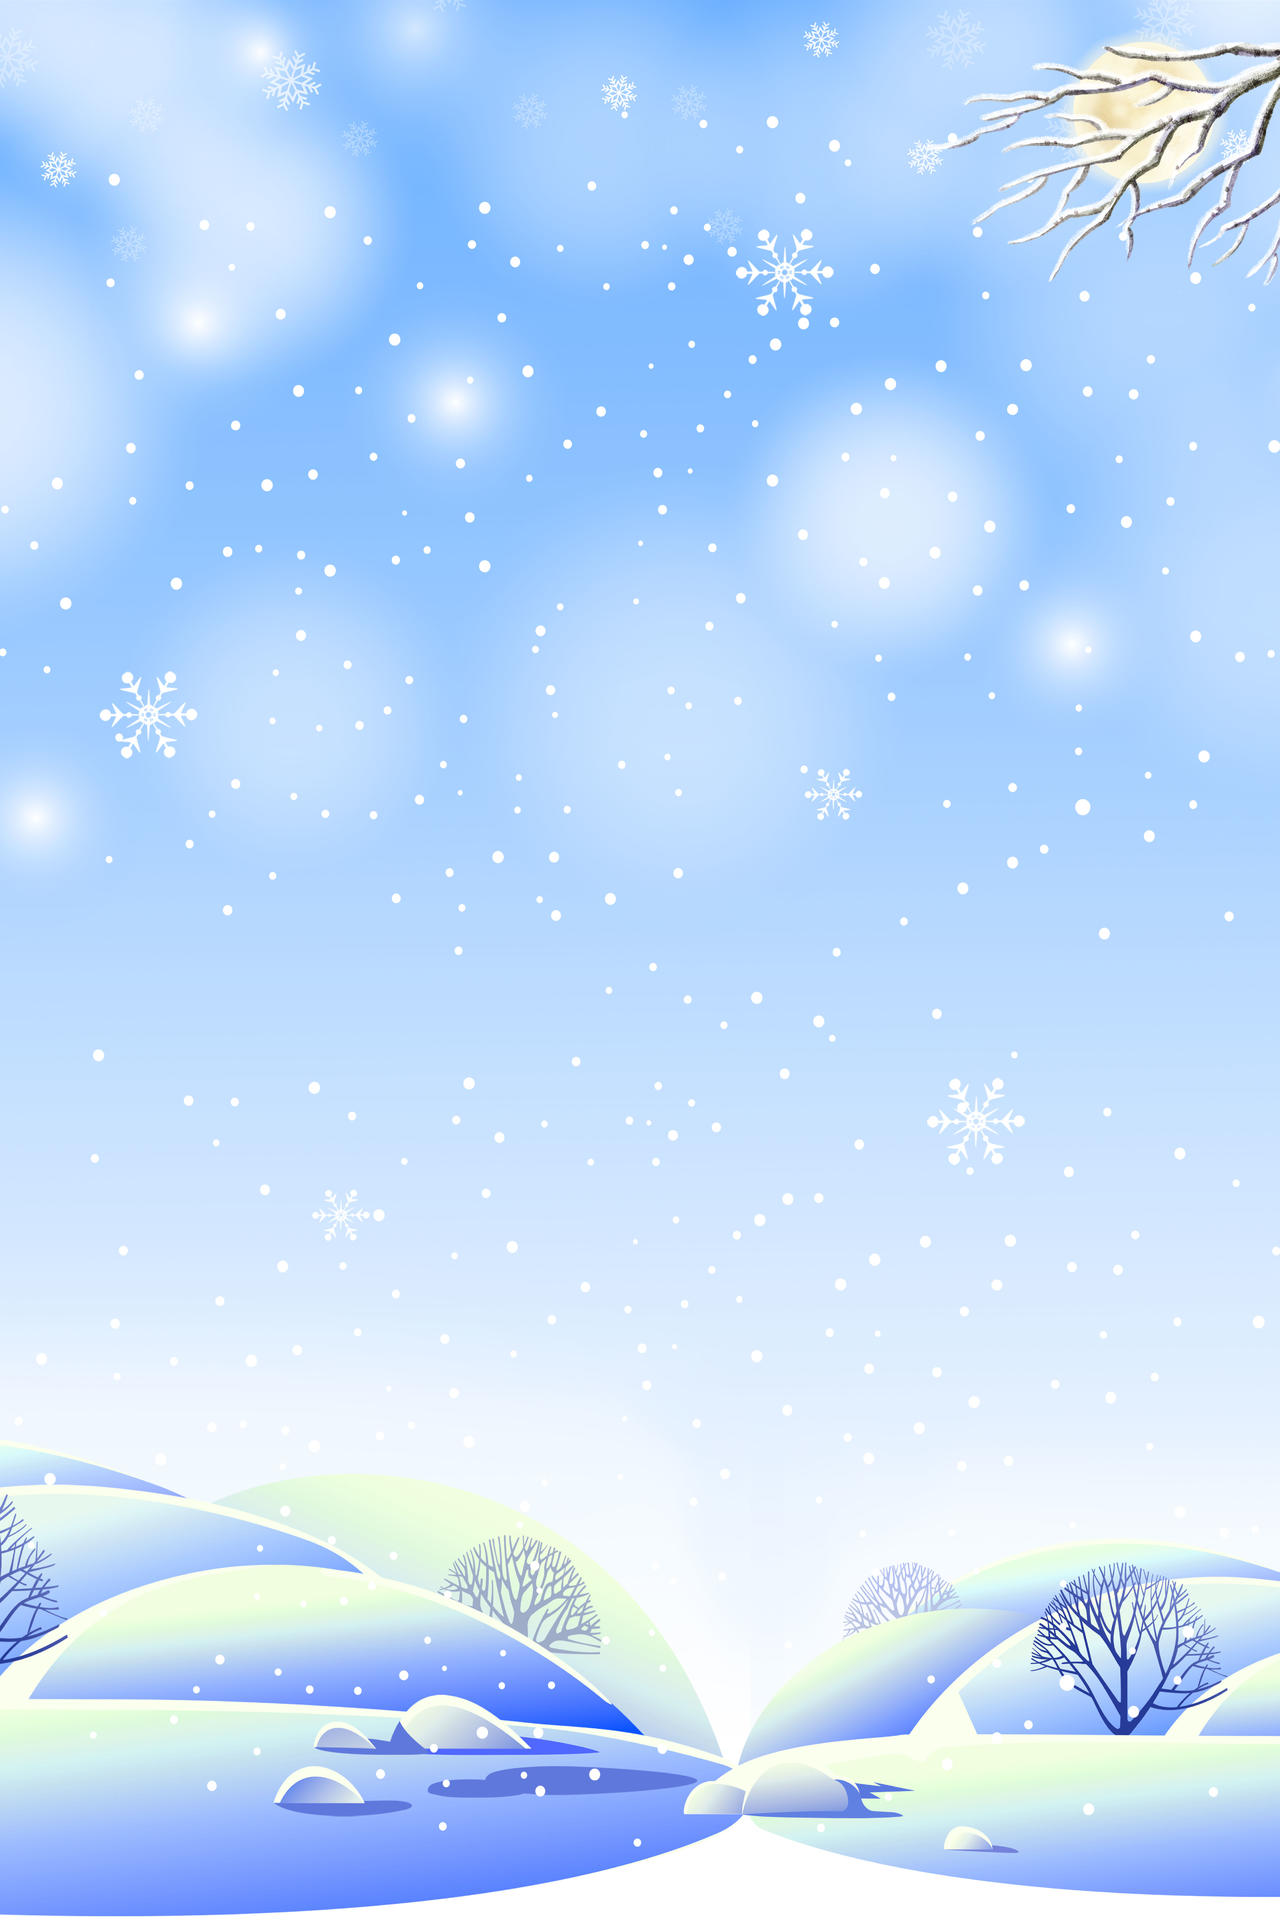 手绘卡通蓝色雪景插画大雪小雪冬至冬季冬天海报背景素材